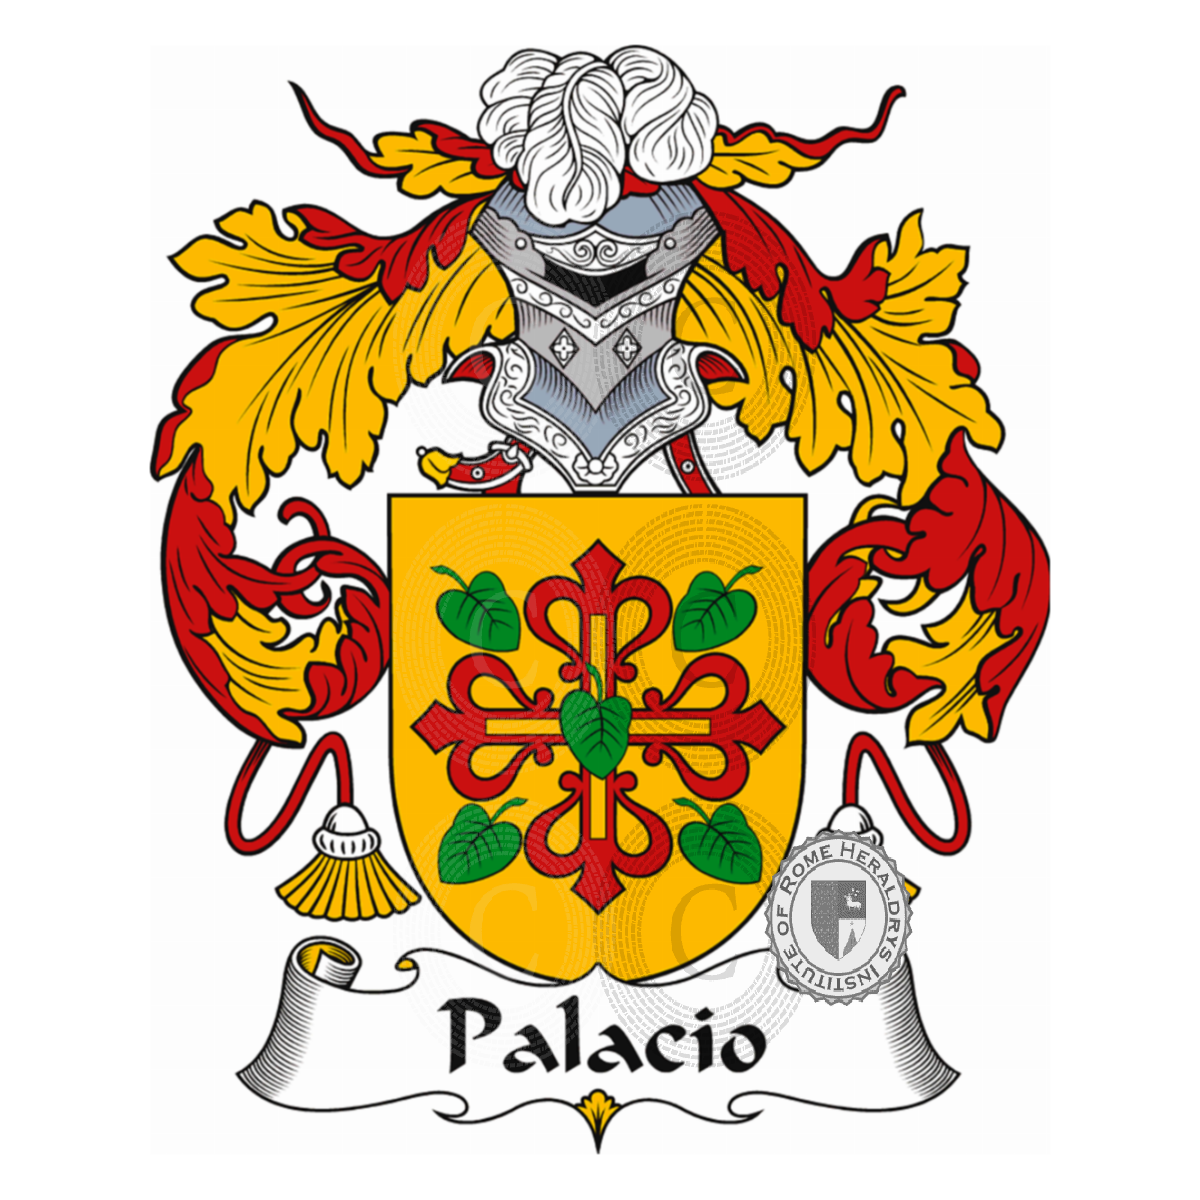 Escudo de la familiaPalacio, de Palacio,del Palacio